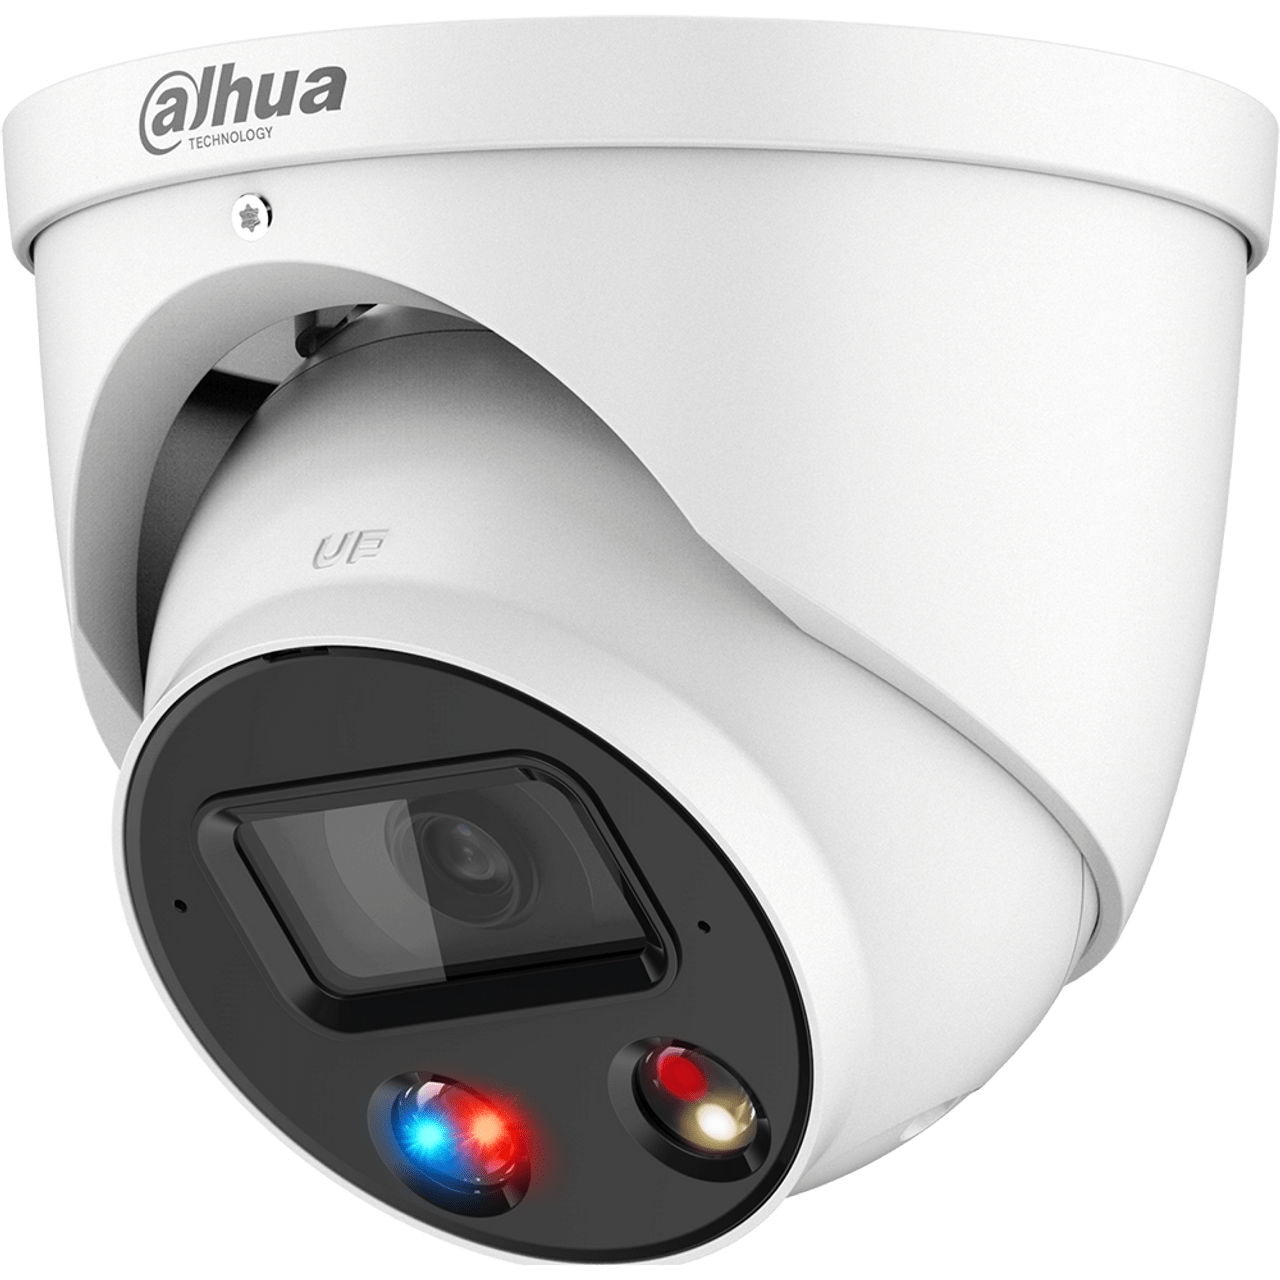 Dahua N83BU82 security camera